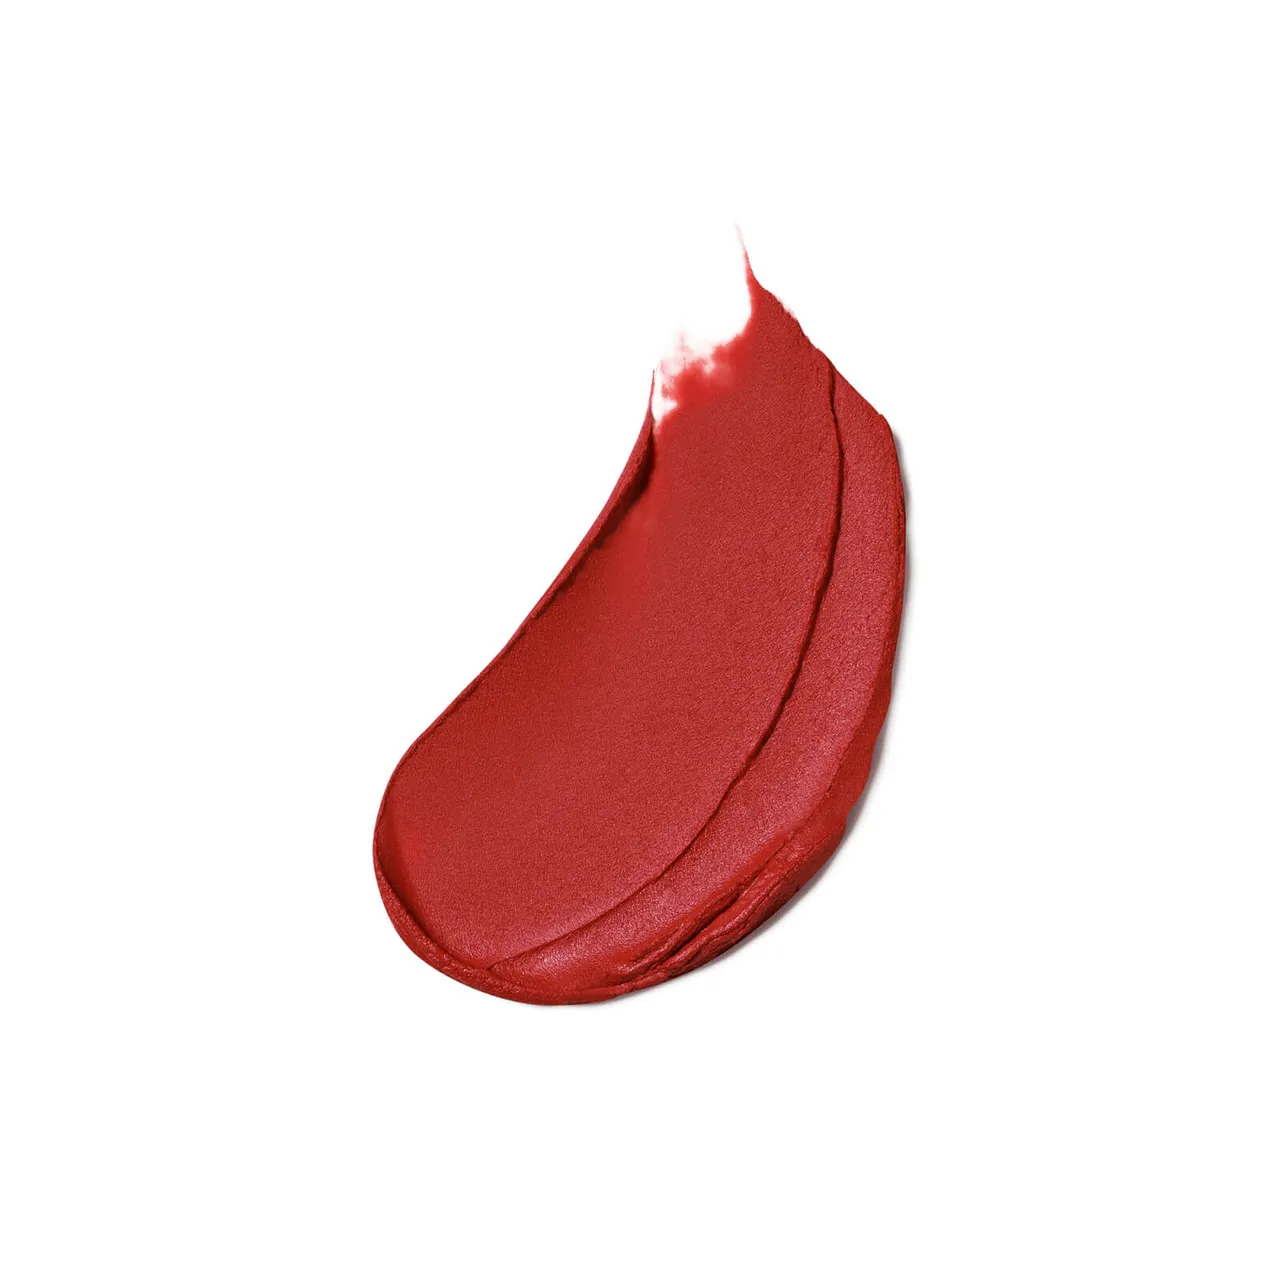 Estée Lauder Pure Colour Matte Lipstick 3.5g (Various Shades) - Thrill Me